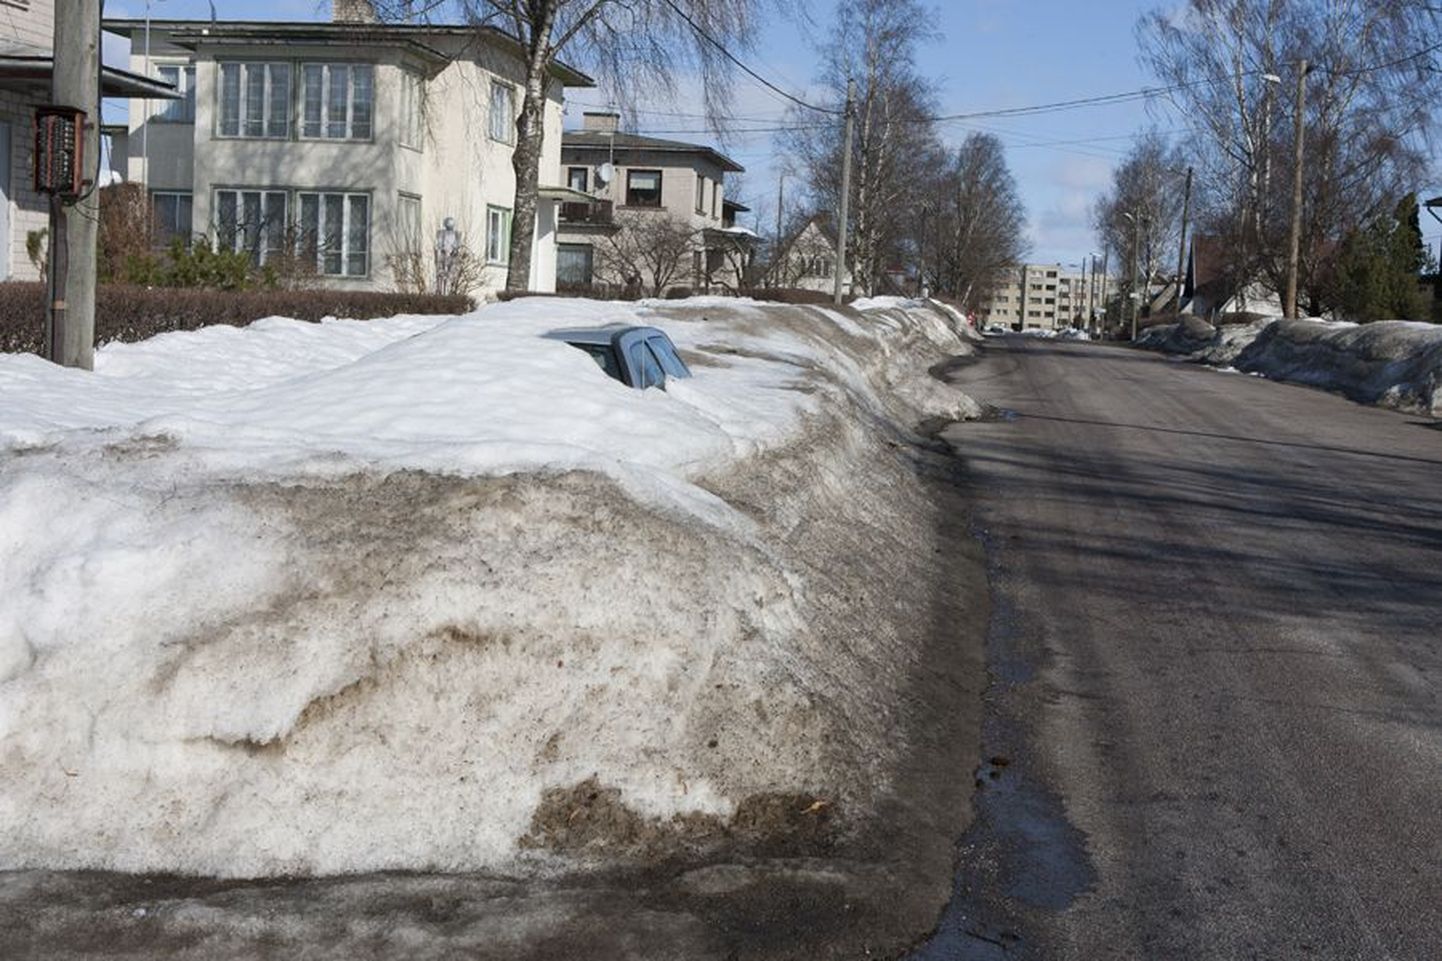 Ülesanne vaatajale: leia linnatänavalt auto! Õnneks pole lumesahk seda sõidukit Põhja puiesteelt minema pühkinud ja nüüd sulab neljarattaline omaniku rõõmuks välja.